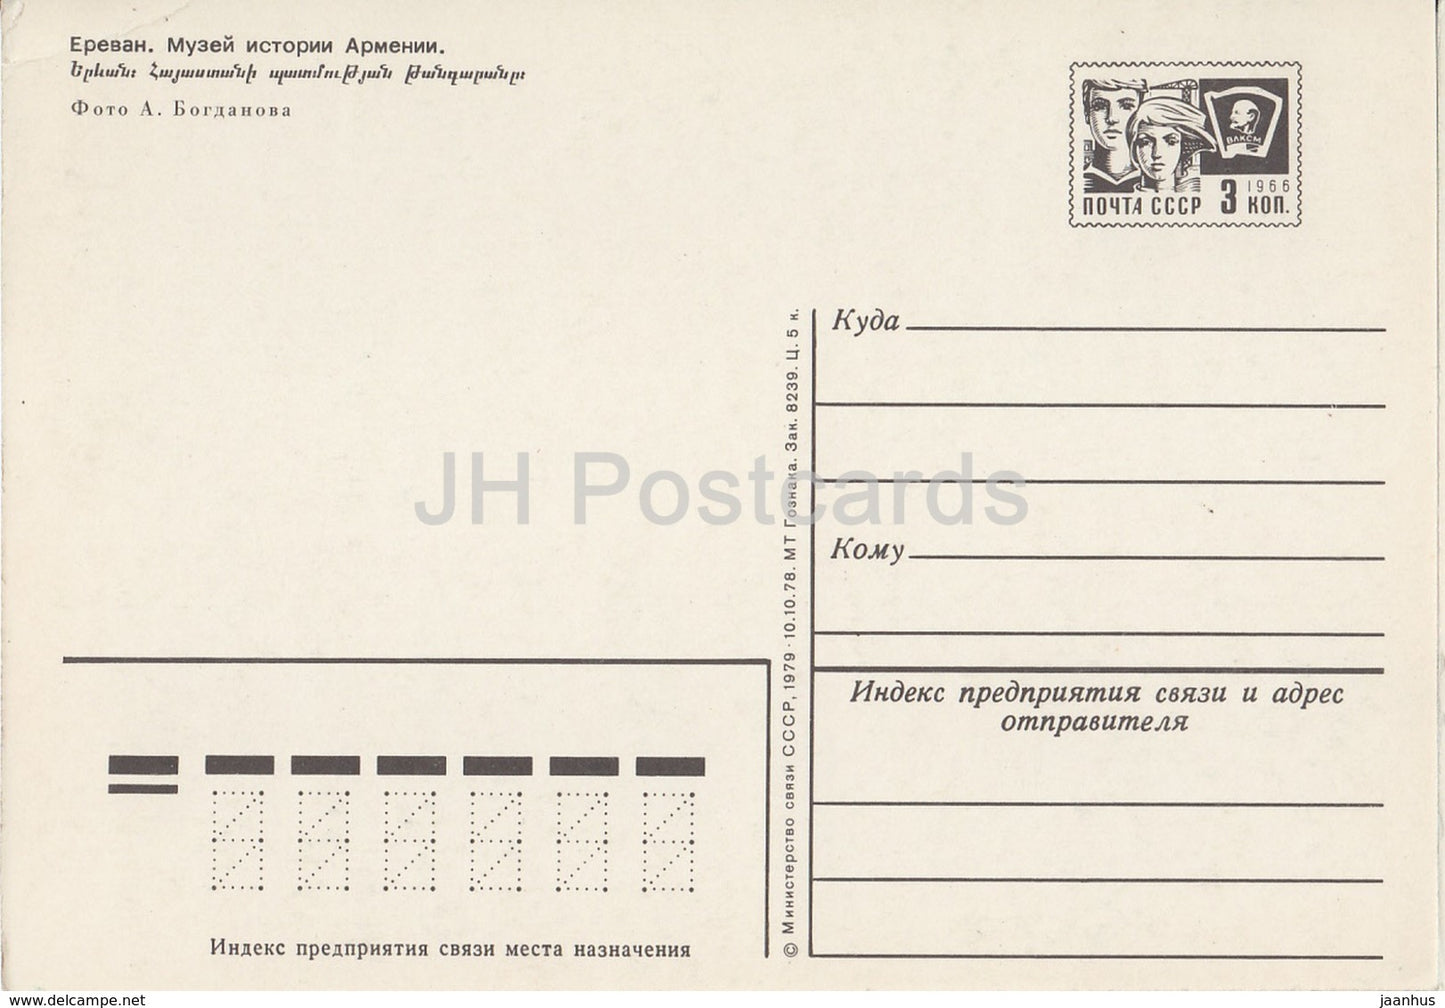 Yerevan - Museum of History of Armenia - postal stationery - 1979 - Armenia USSR -  unused